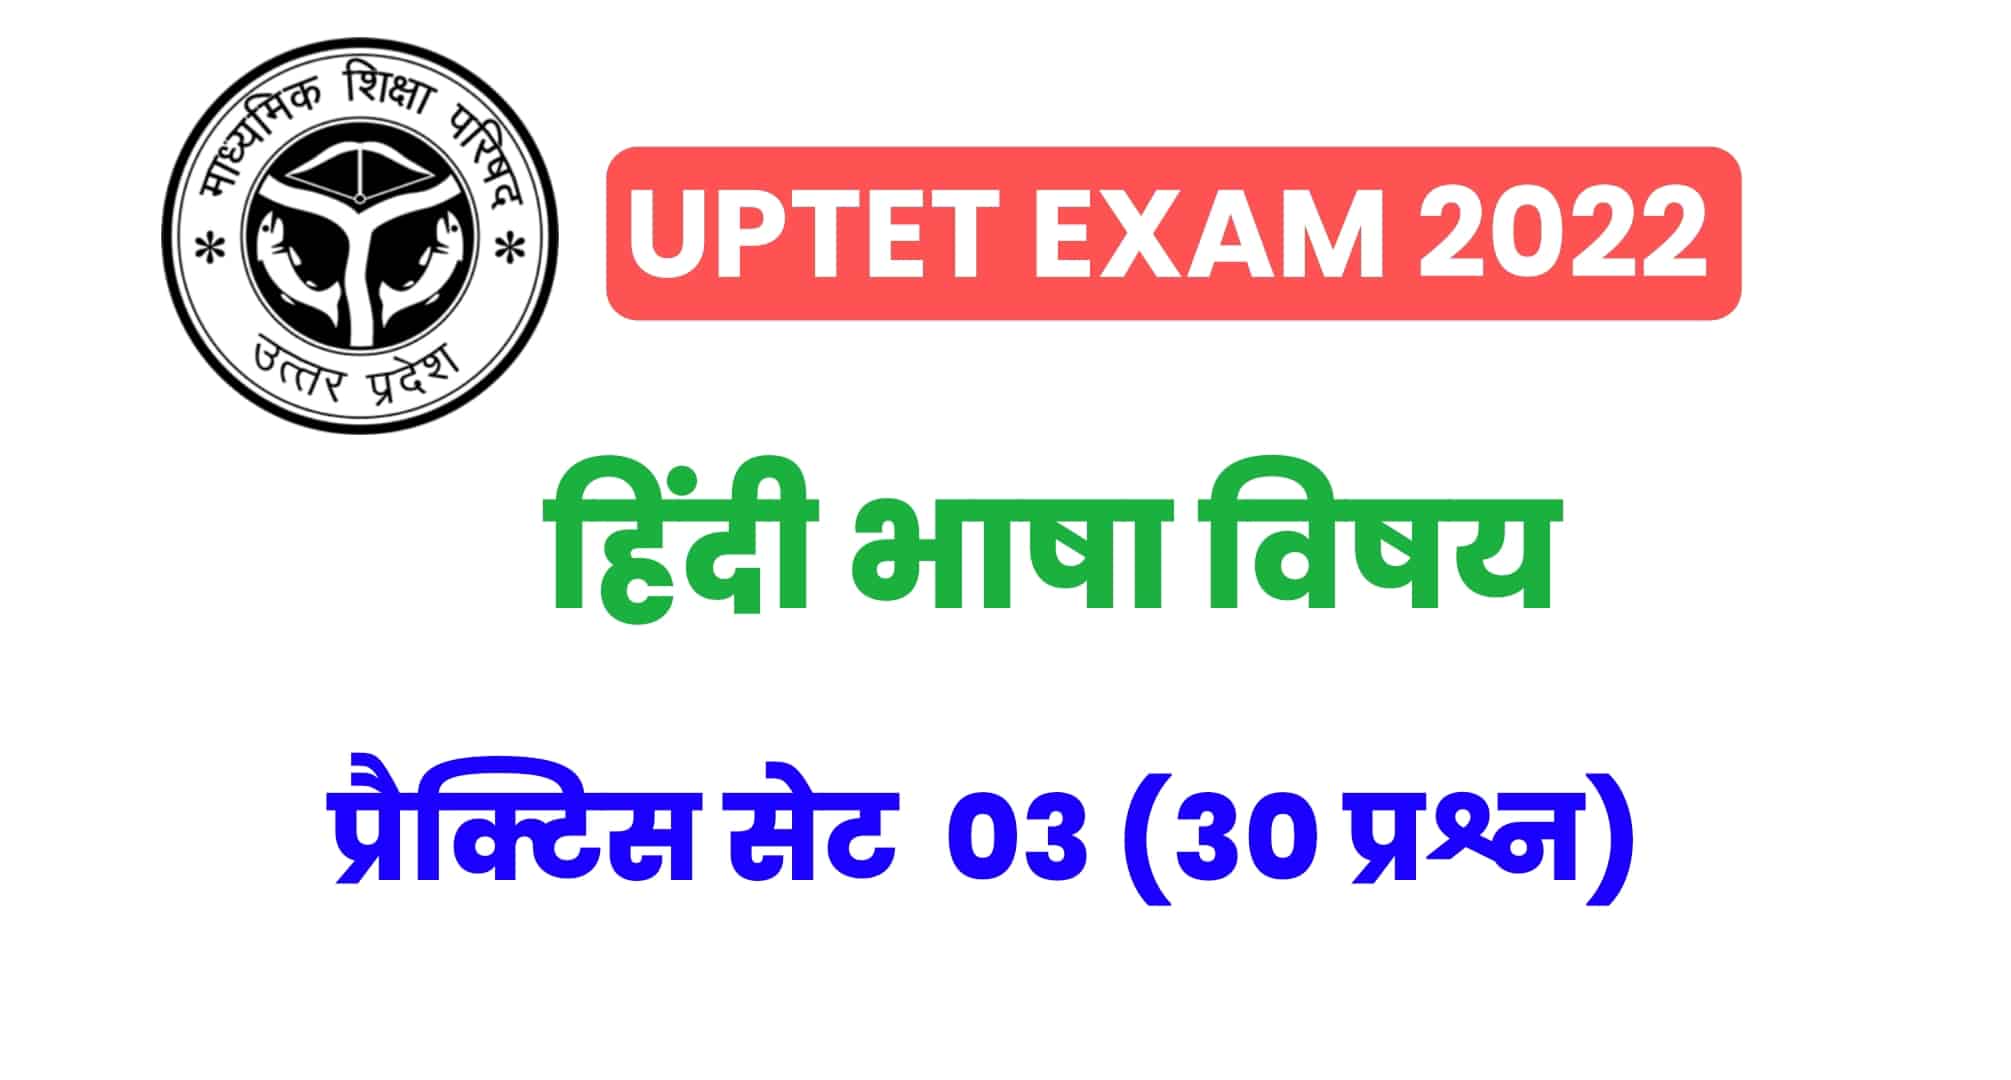 UPTET हिंदी विषय प्रैक्टिस सेट 03 : UPTET की परीक्षा में कई बार पूछे गए इन प्रश्नों को जरूर पढ़ें